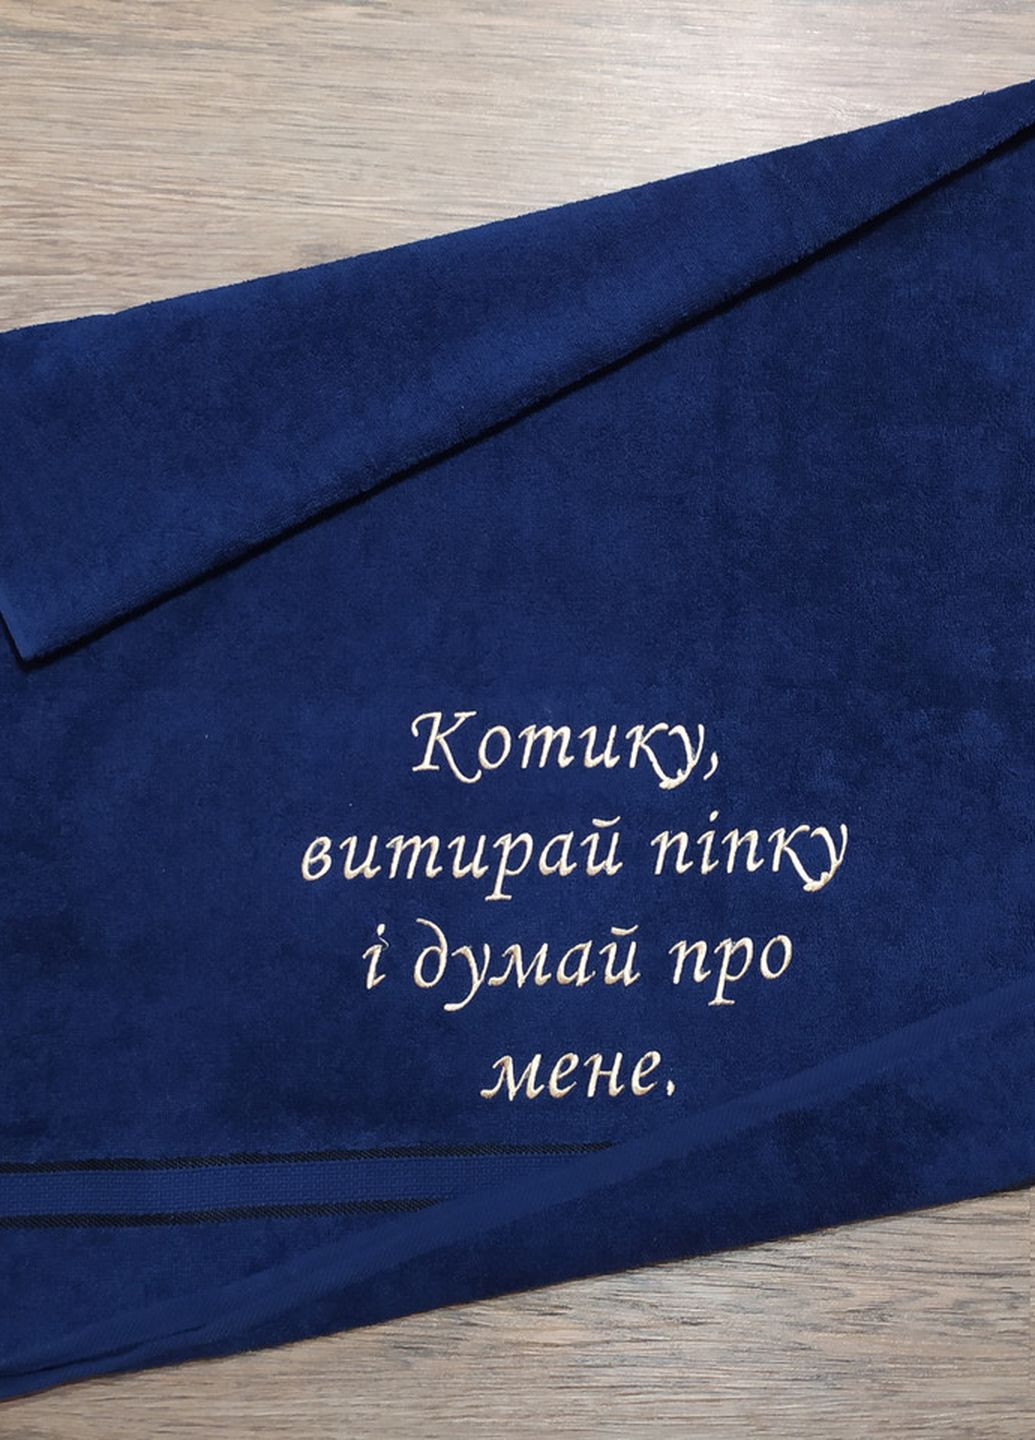 No Brand полотенце с вышивкой махровое банное 70*140 темно-синий мужу папе 04252 однотонный темно-синий производство - Украина